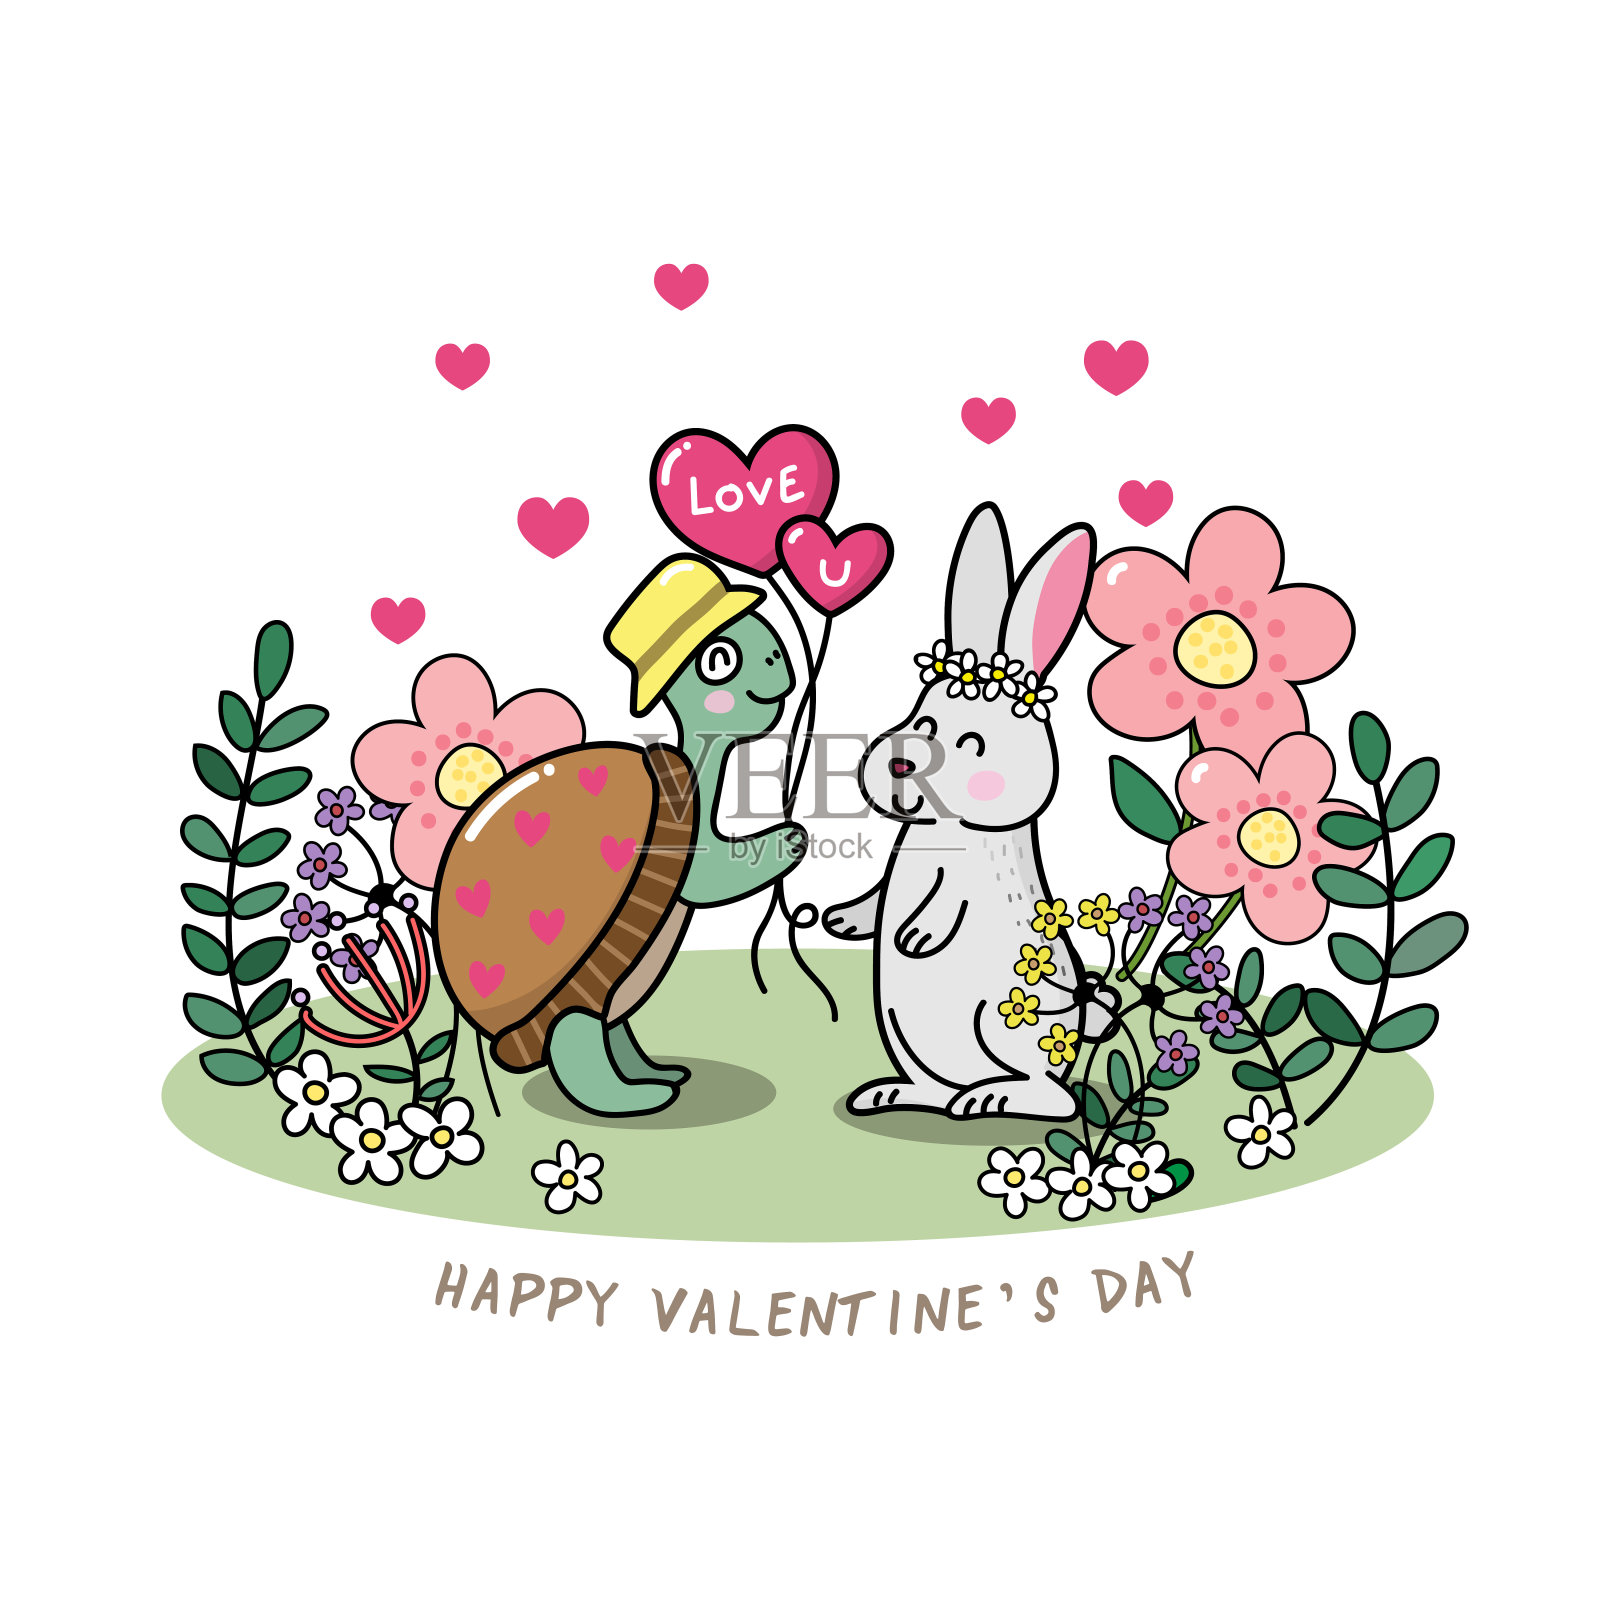 可爱的乌龟和兔子的情人节贺卡。向量和背景插画图片素材